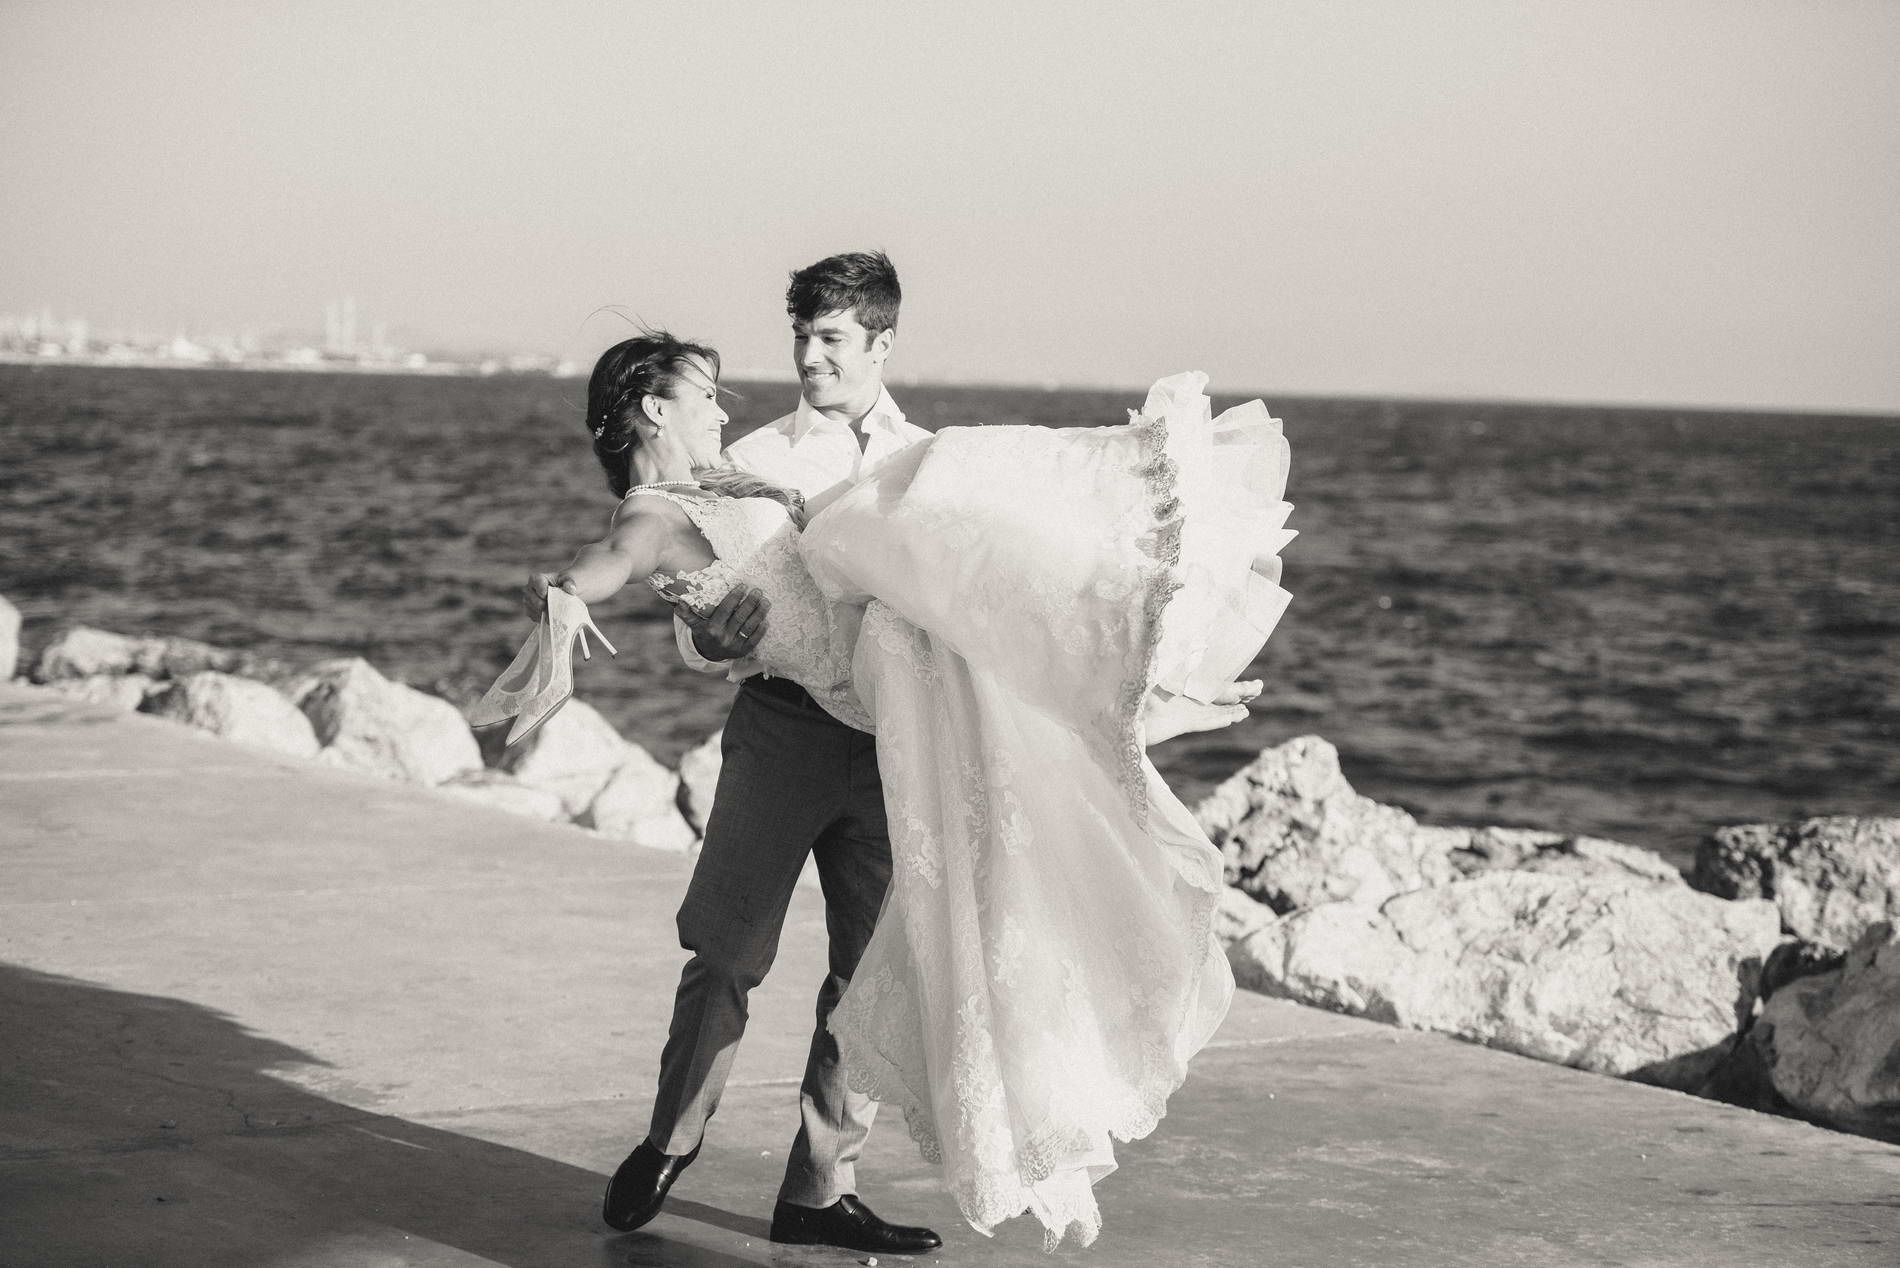 Next day retro φωτογράφηση γάμου στην θάλασσα